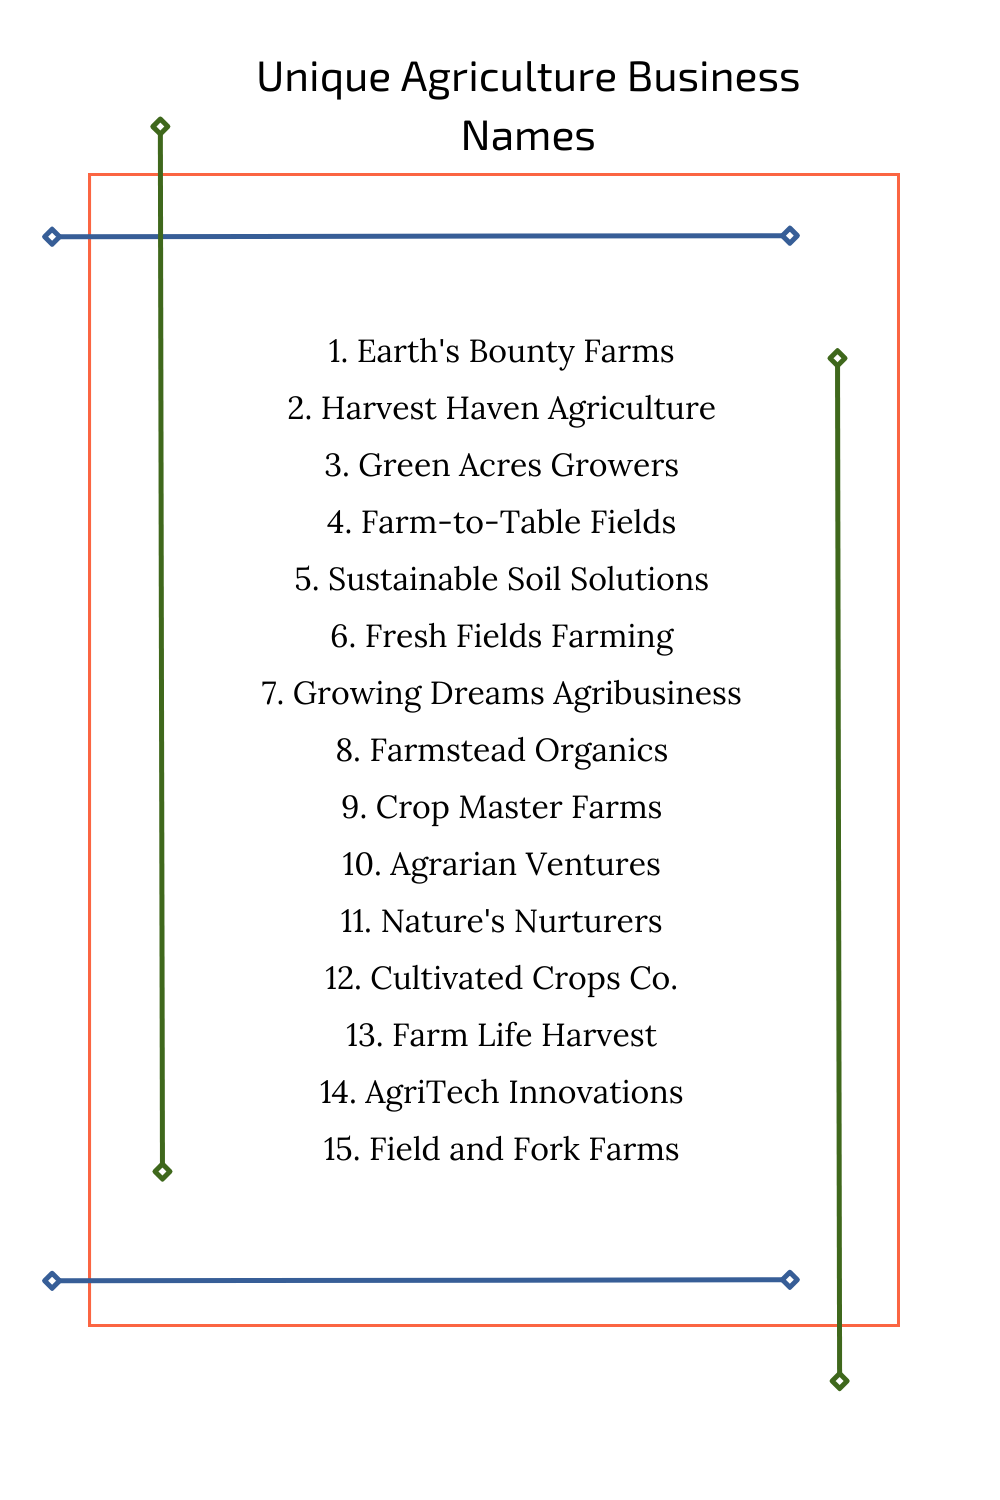 Unique Agriculture Business Names